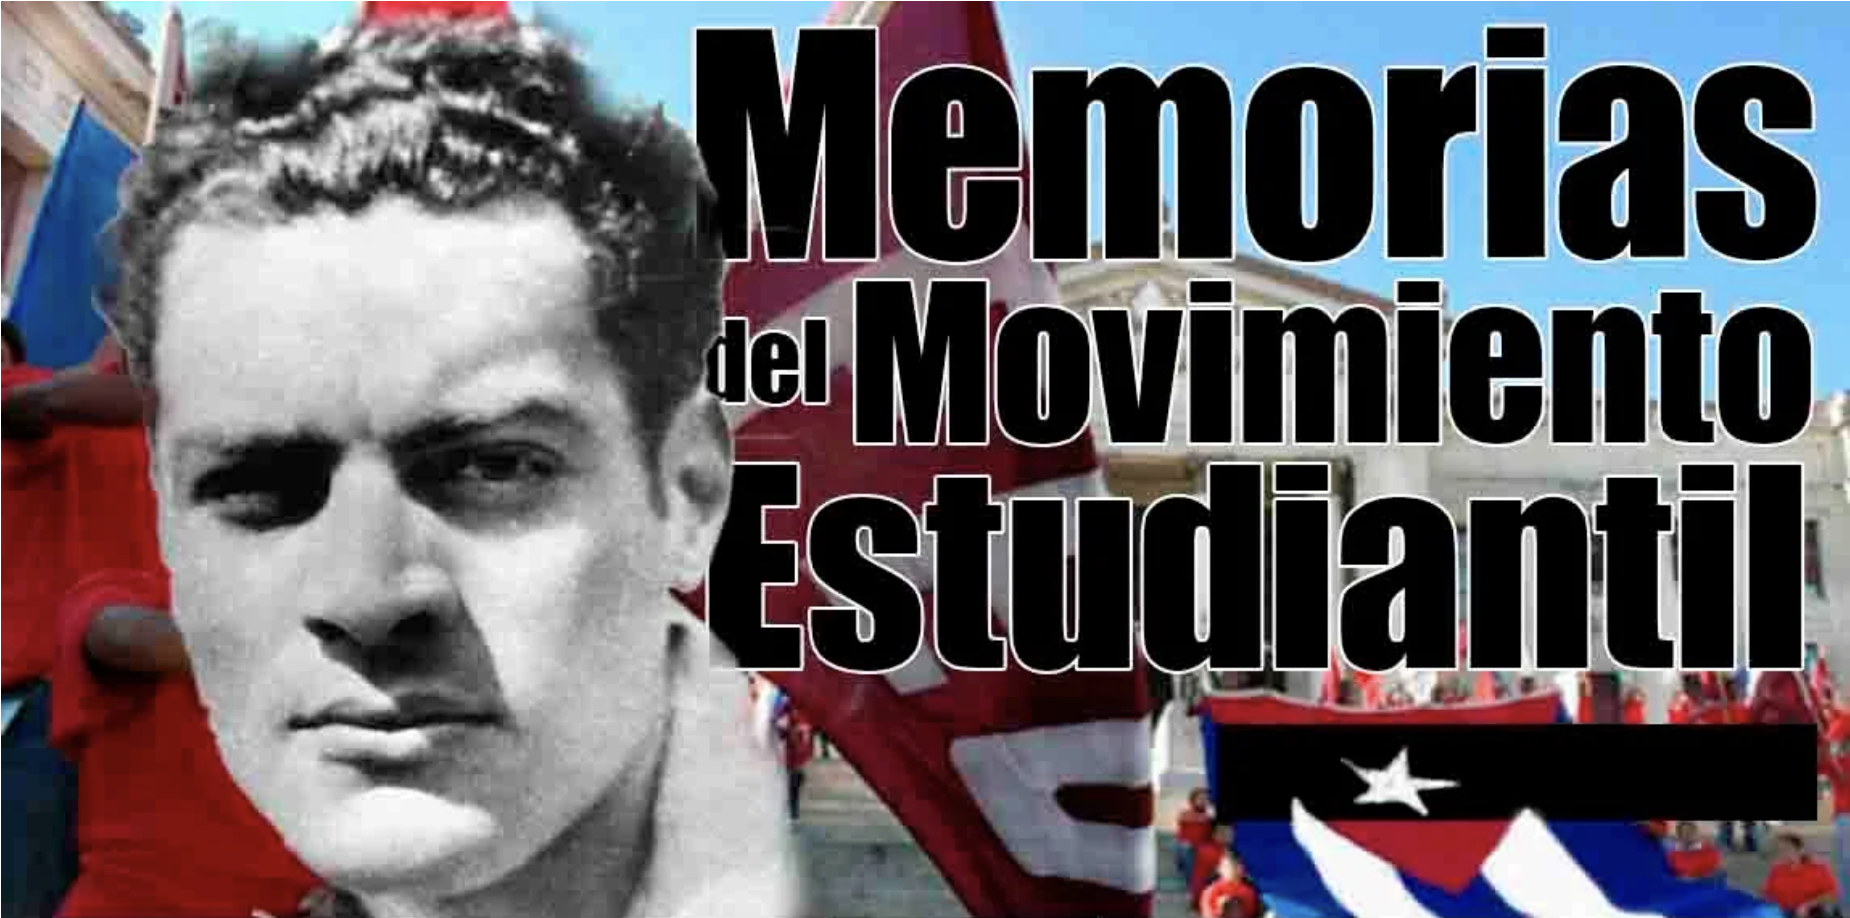 Memorias del movimiento estudiantil: La FEU en la revolución cubana